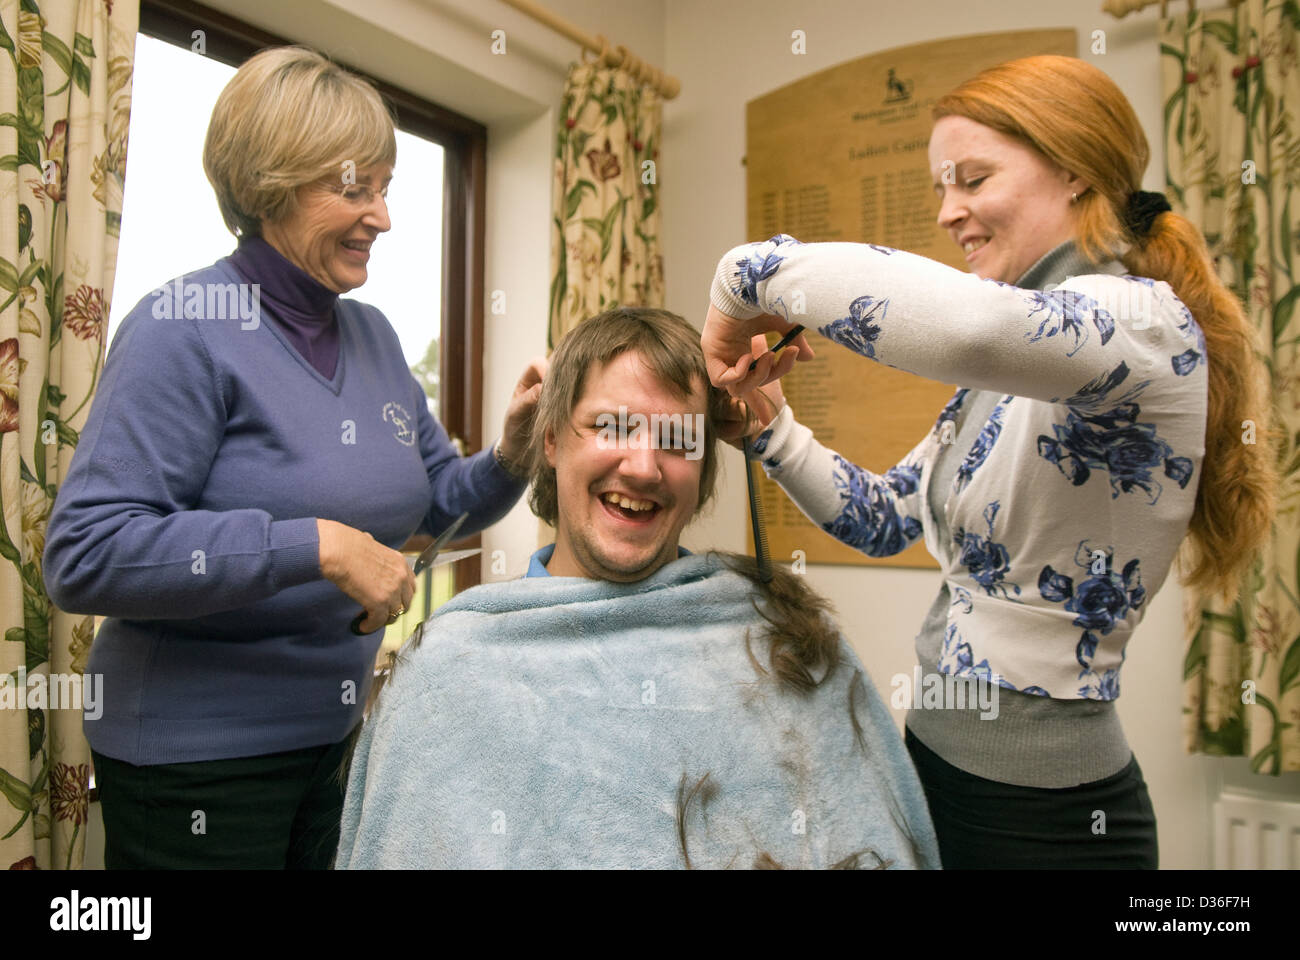 26 anno vecchio nel processo di avere tutti i suoi peli rasati off per il cancro la carità, Bordon, hampshire, Regno Unito. Foto Stock